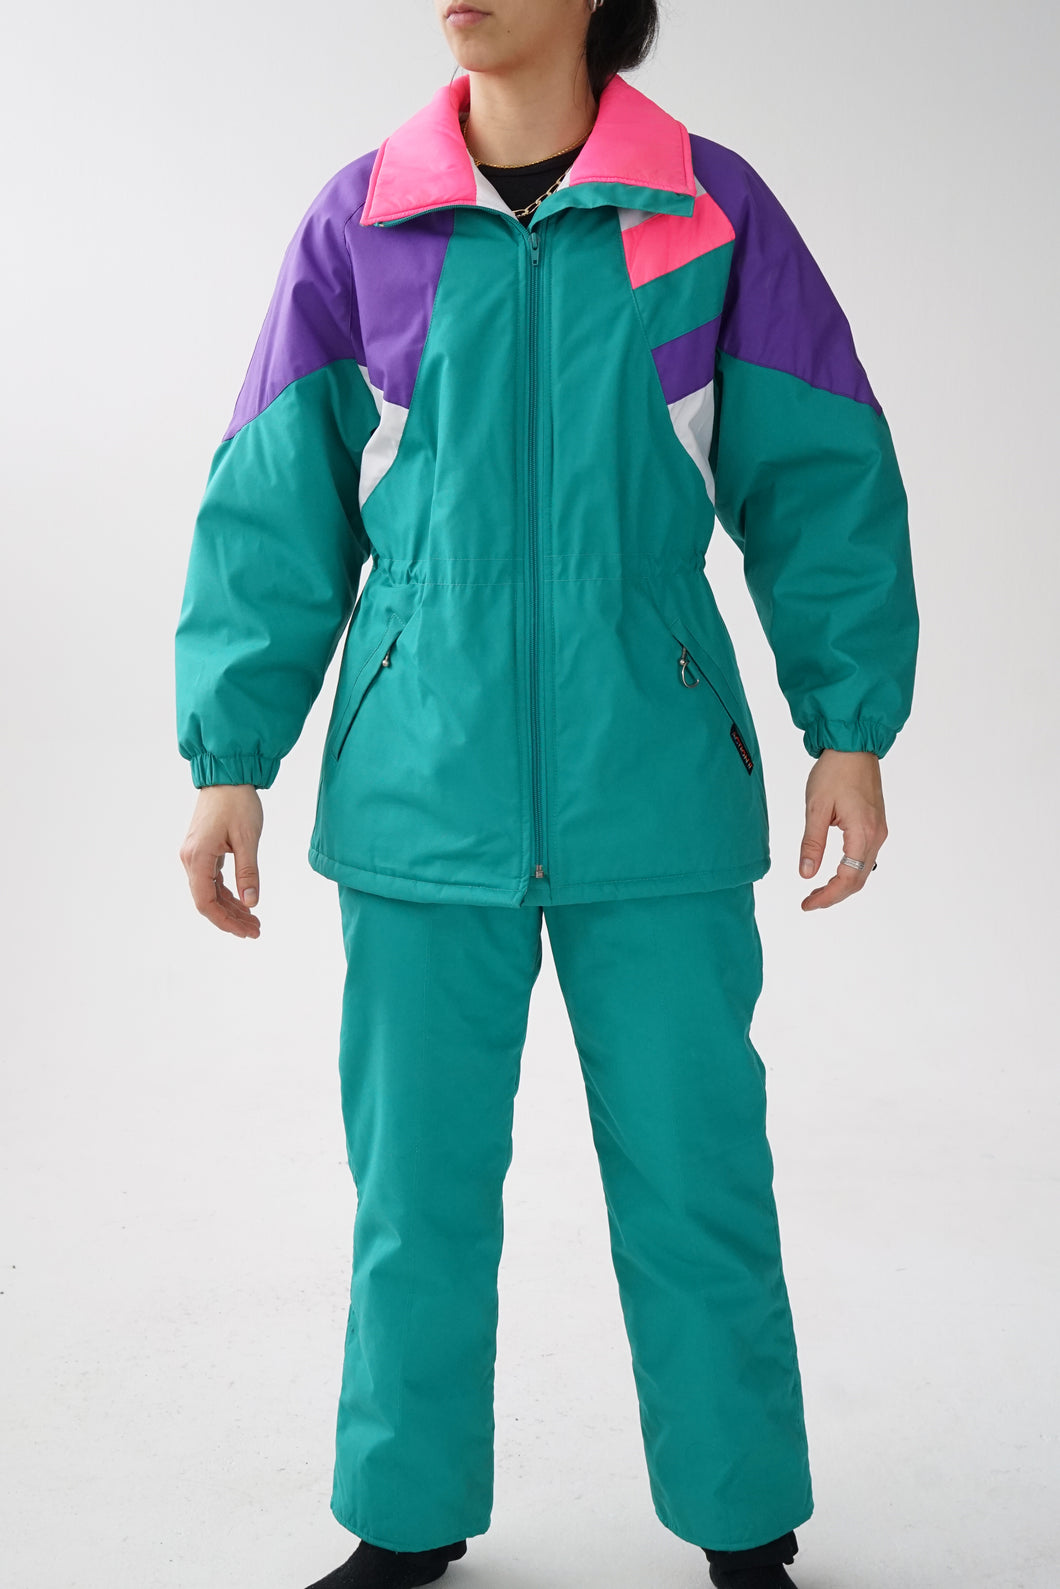 Ensemble de ski mince rétro Action ll vert avec accent rose fluo, mauve et blanc pour femme taille 8 (XS-S)